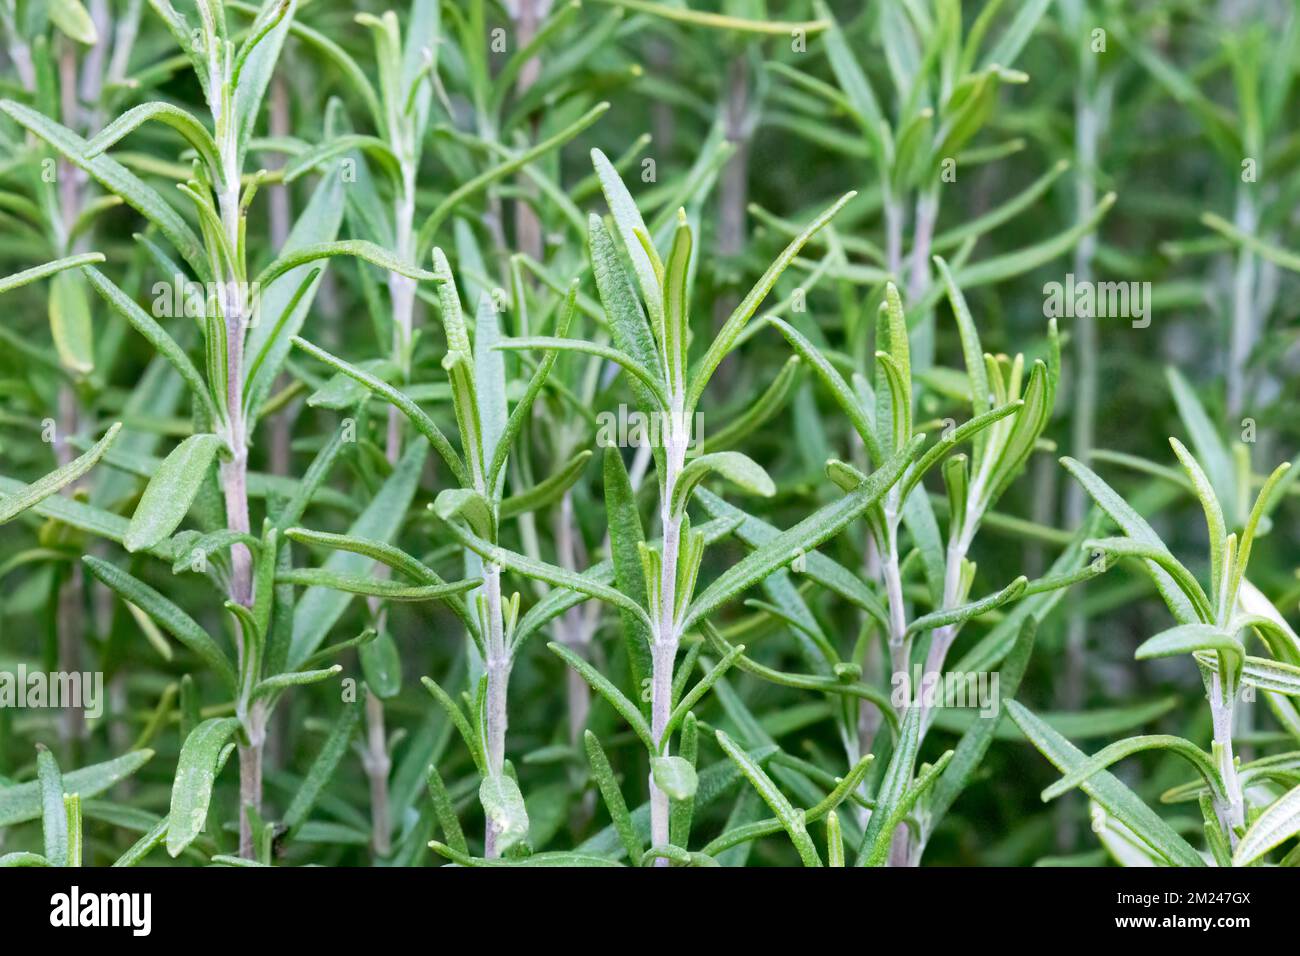 Rosemary (Salvia rosmarinus), herb growing in garden. Stock Photo